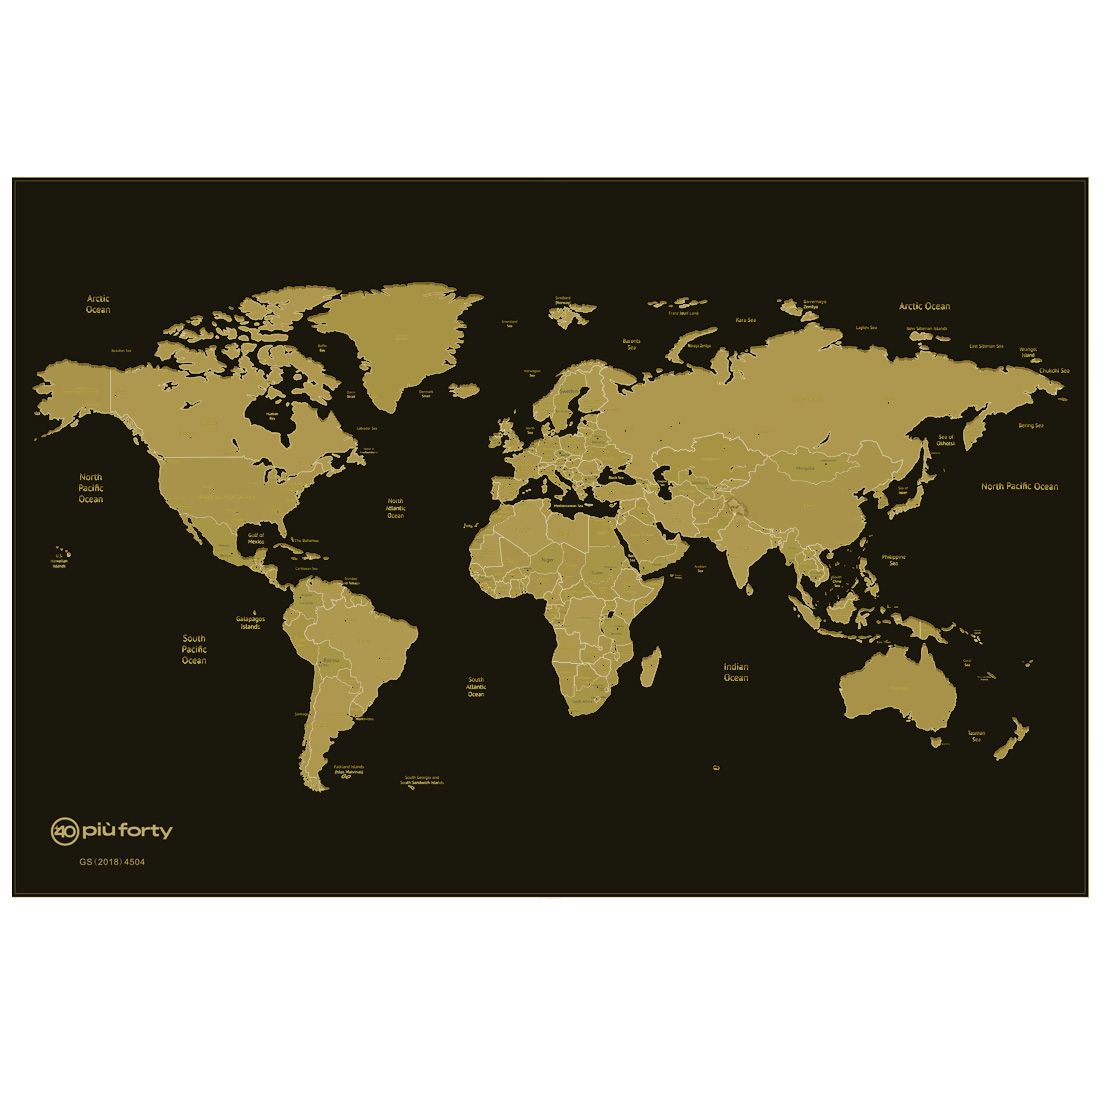 Mappa Del Mondo Da Grattare Scratch Off World Map 60x40 Cm Più Forty